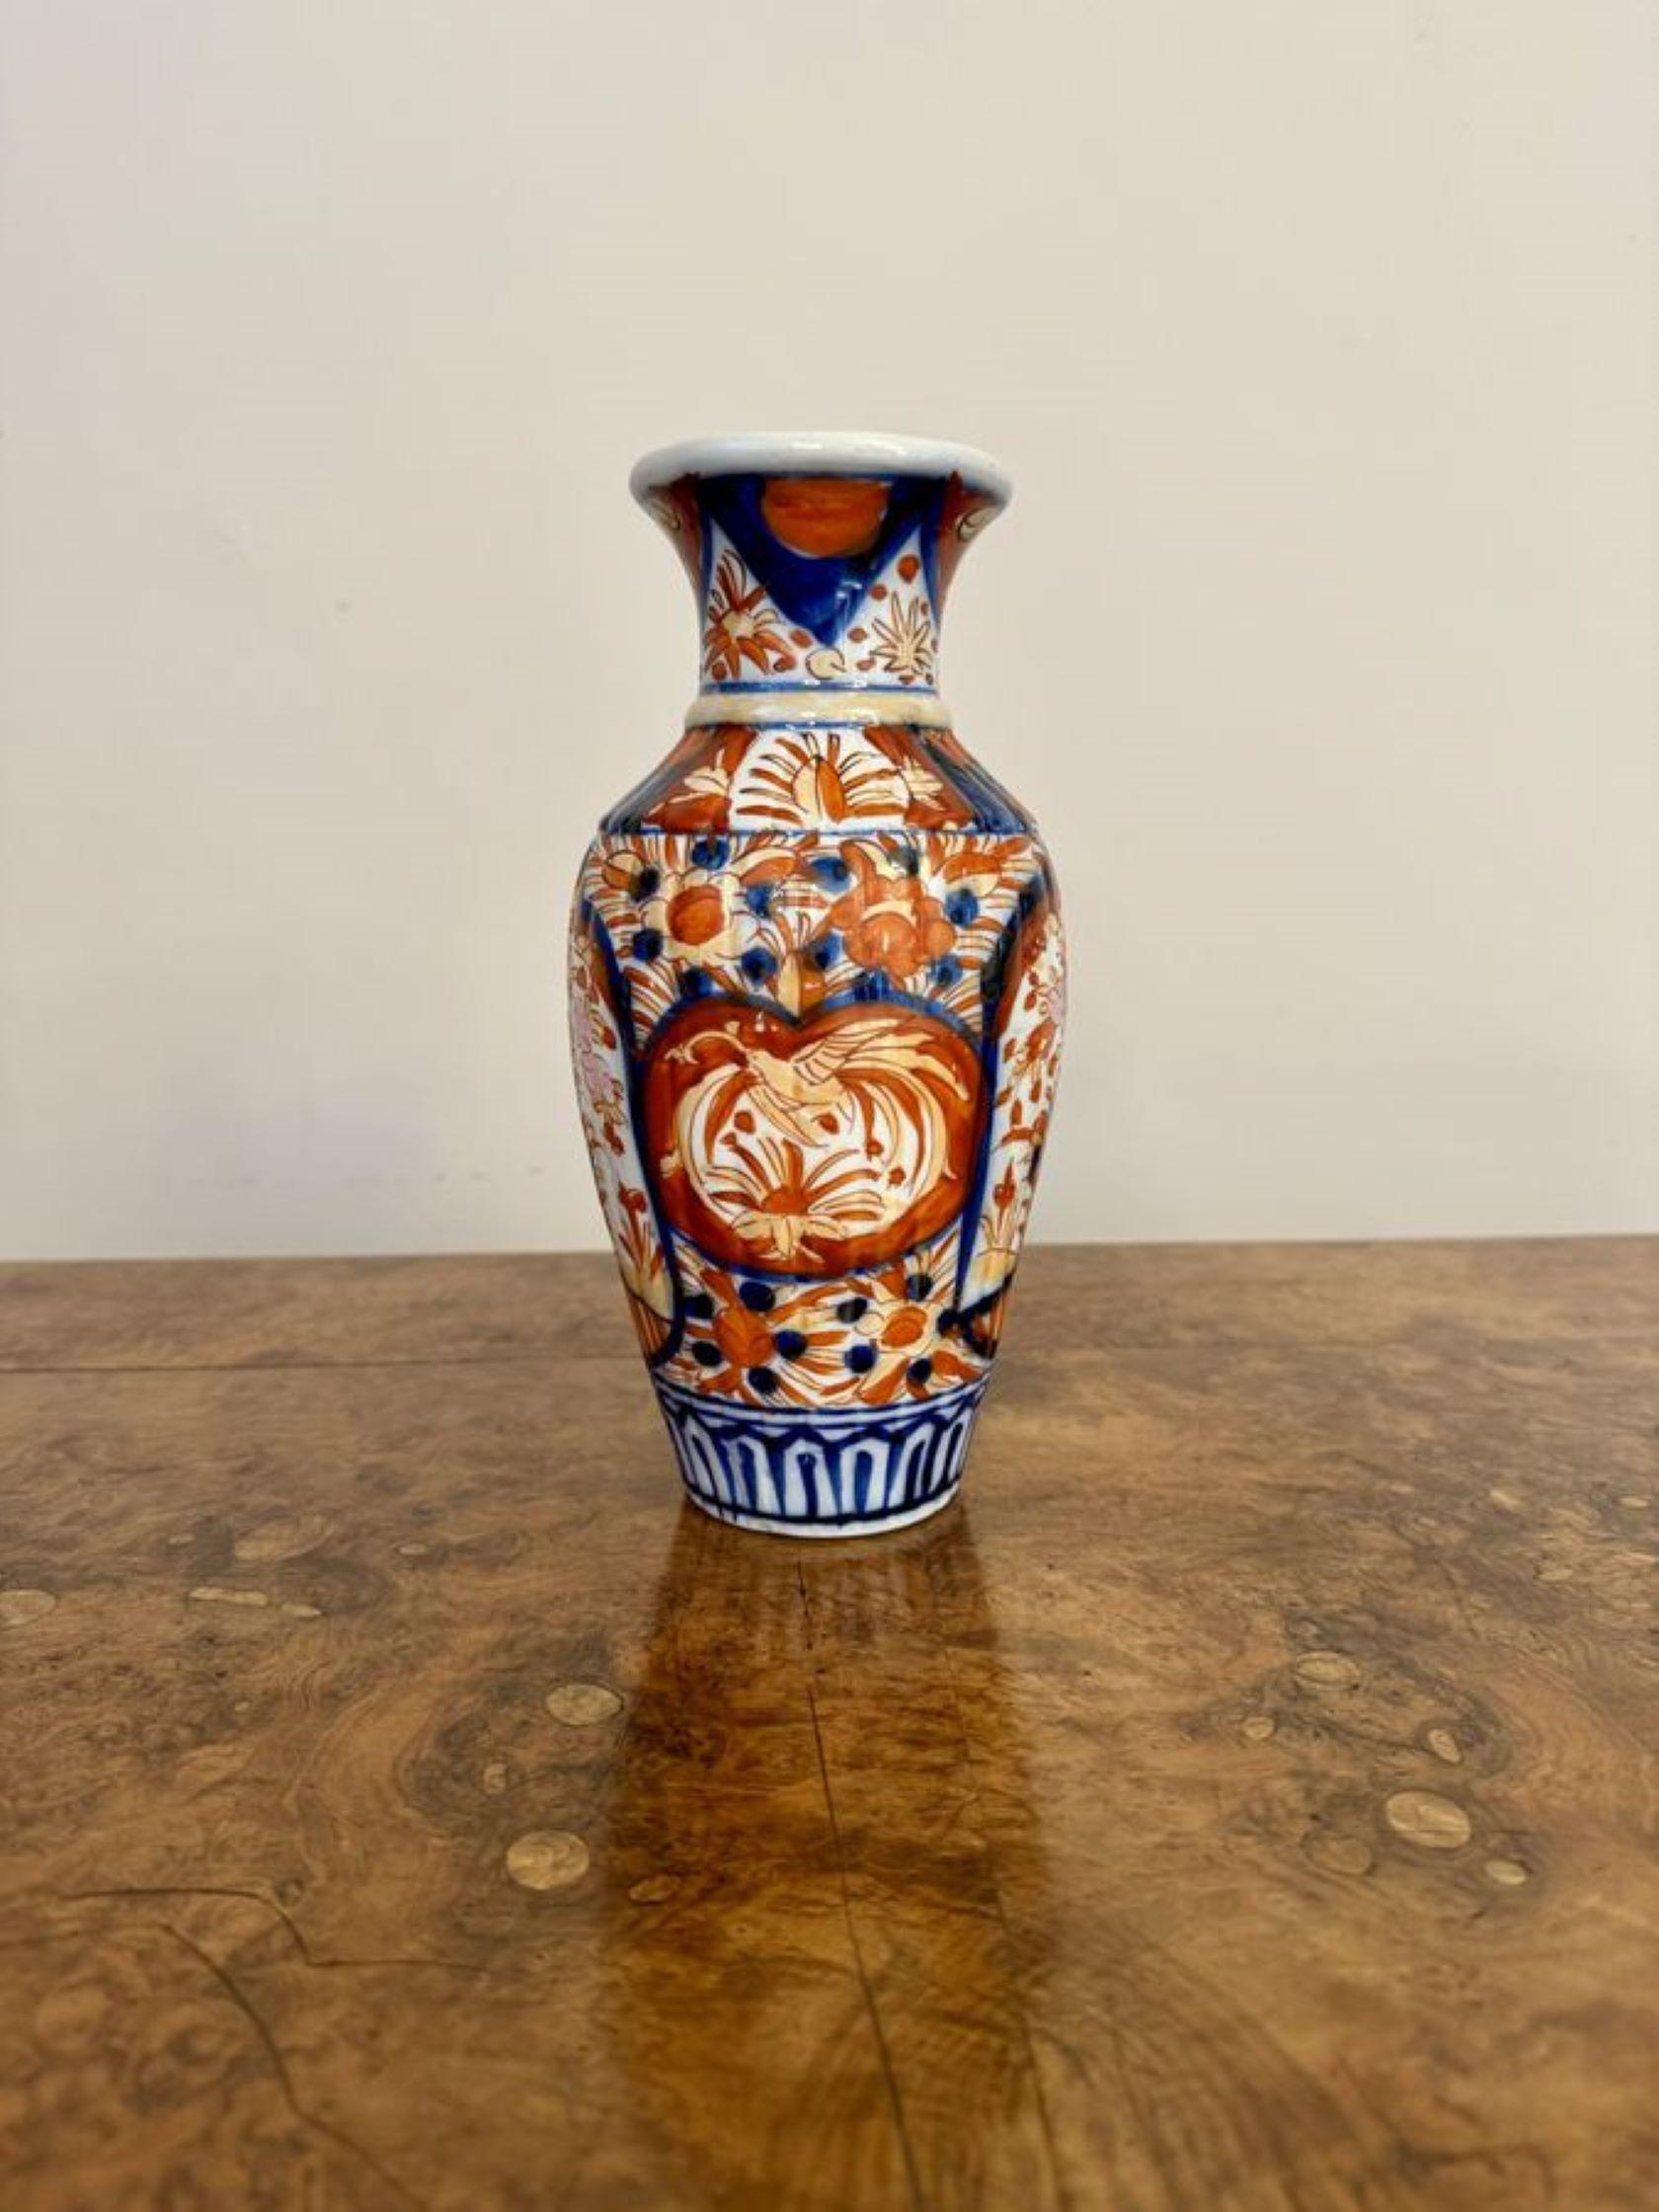 Lovely Qualität antiken japanischen Imari Vase, mit einer Qualität antiken japanischen Imari geformte Vase mit Bäumen, Blumen, Blätter und Schriftrollen von Hand in wunderbaren roten, blauen und weißen Farben gemalt.

D. 1900